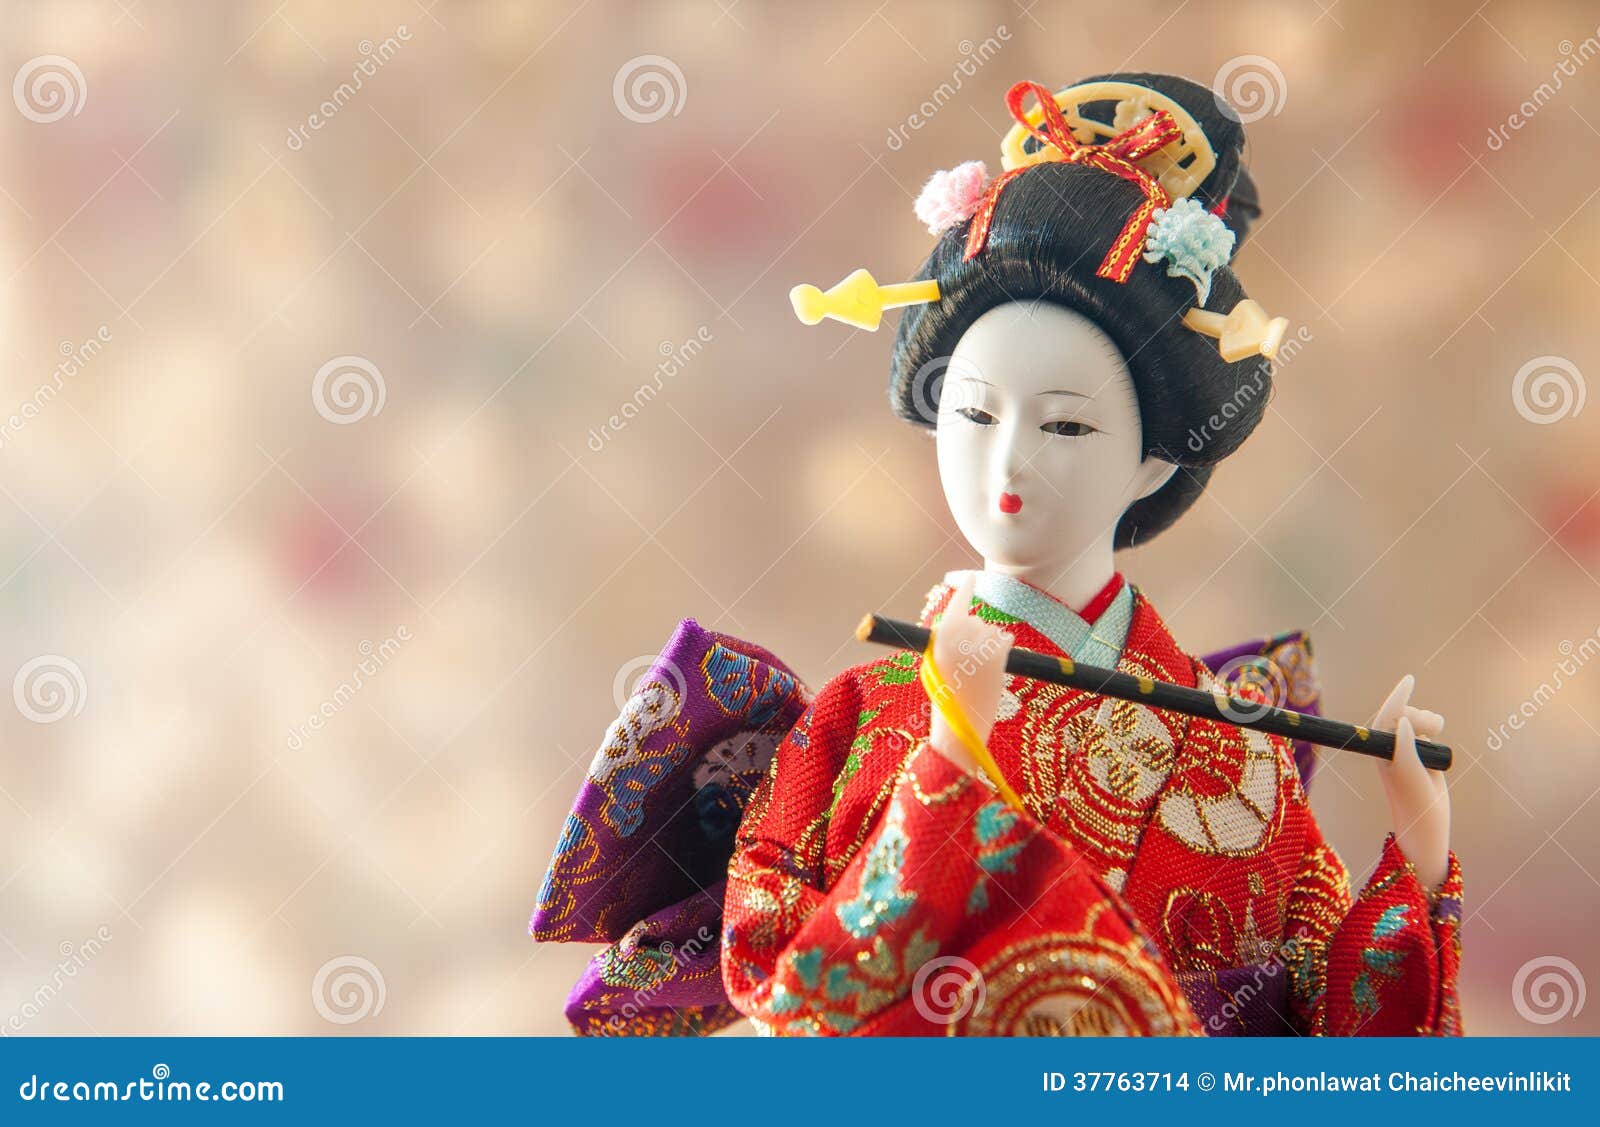 Pop Van De Stilleven De Leuke Japanse Geisha Stock Foto - Image of ...